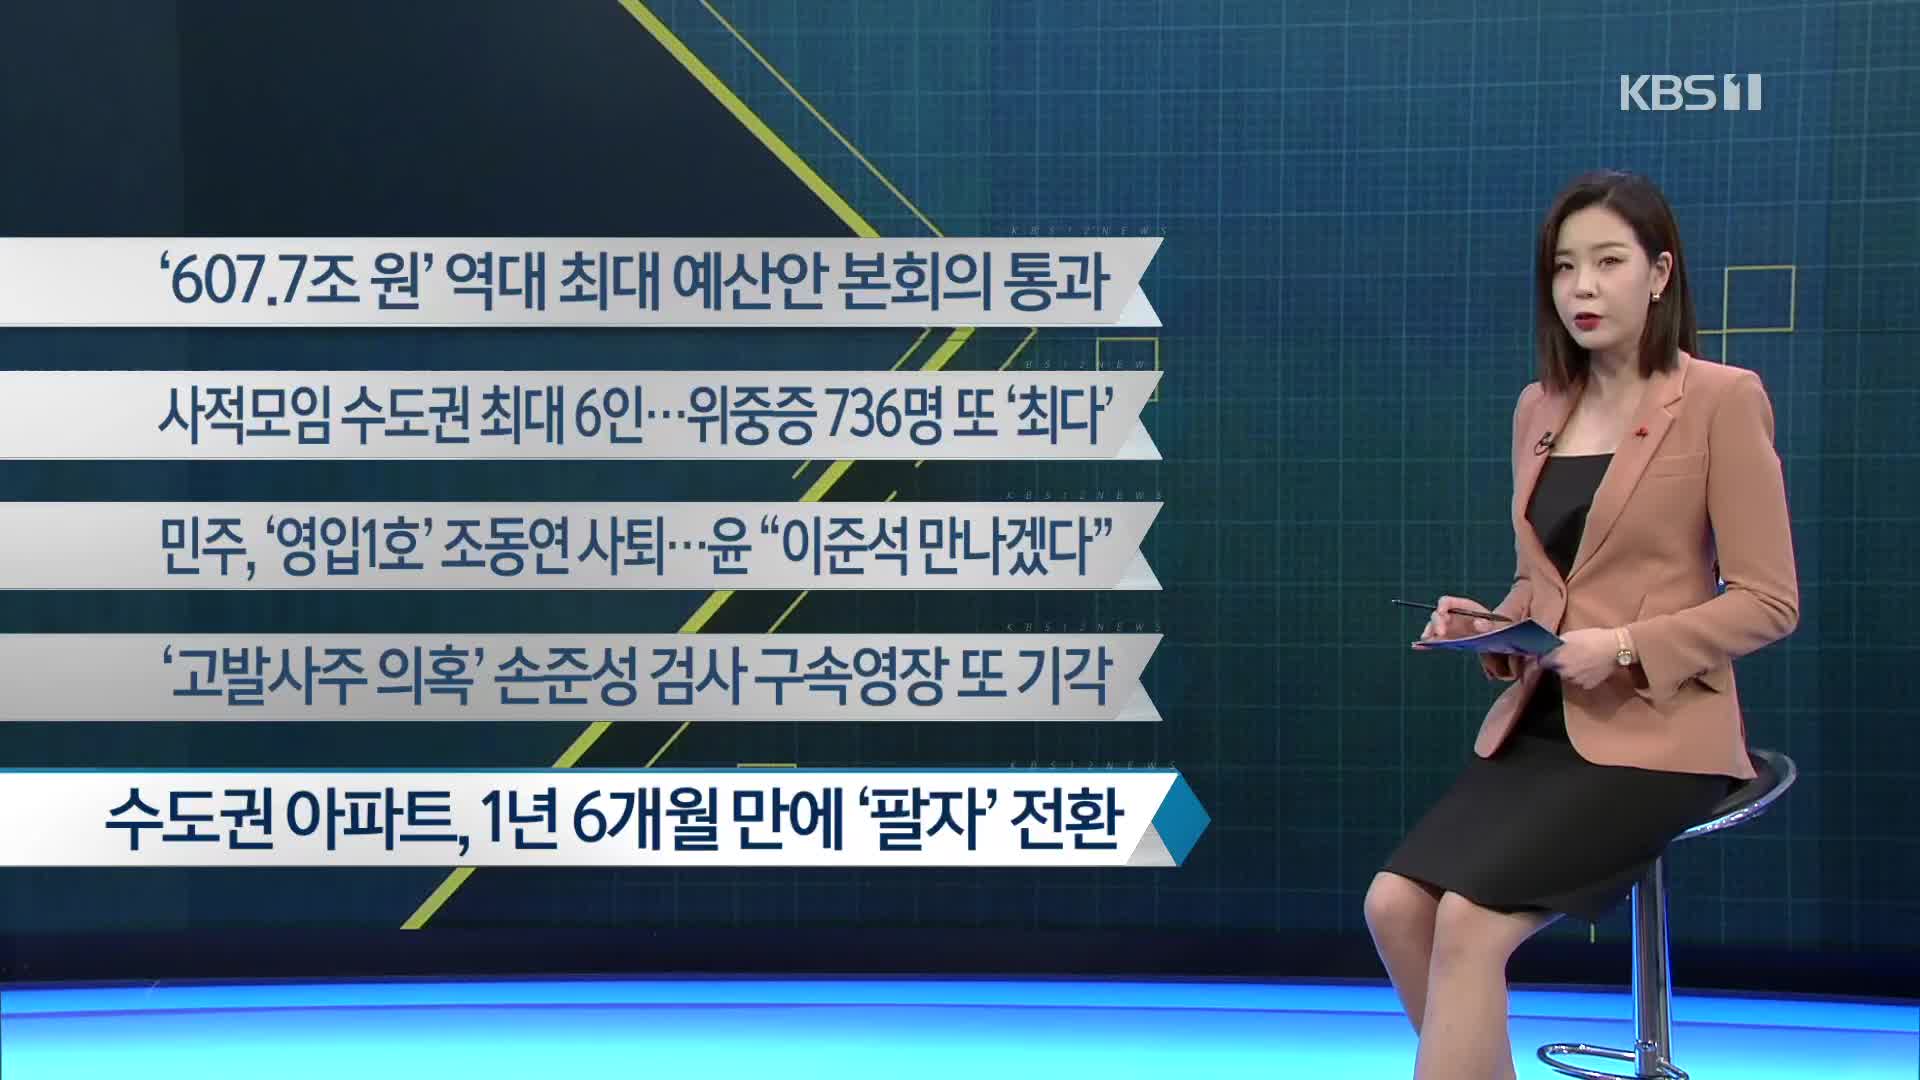 [이 시각 주요뉴스] ‘607.7조 원’ 역대 최대 예산안 본회의 통과 외